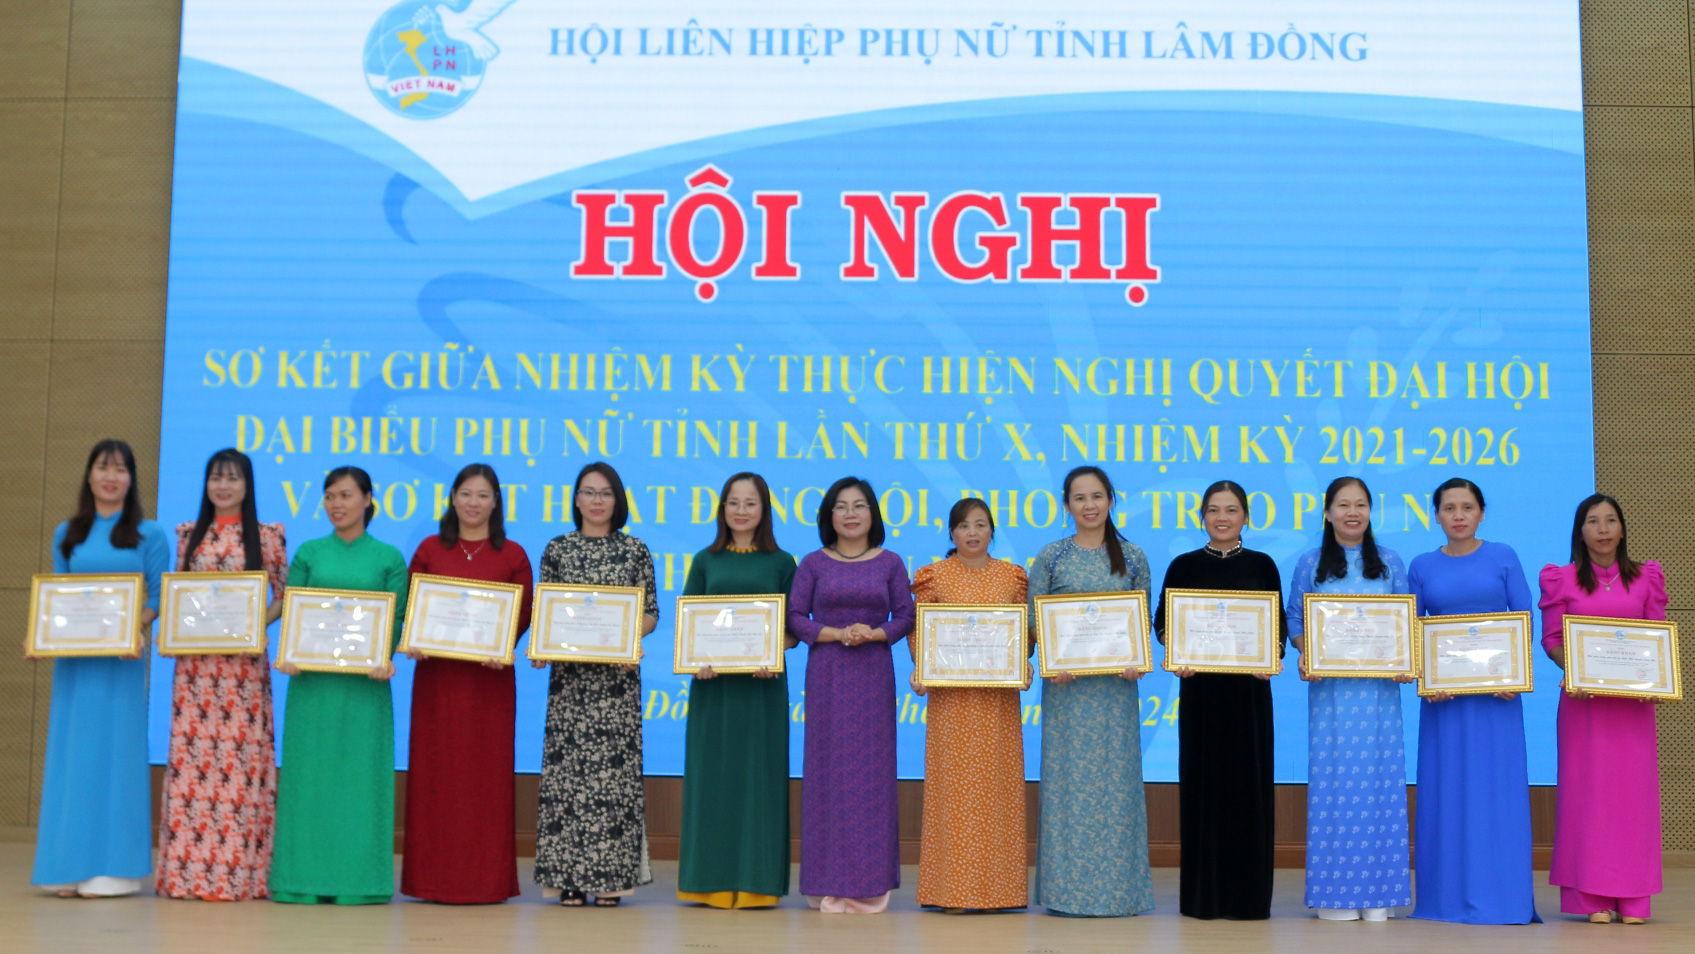 Phó Chủ tịch Hội LHPN tỉnh Lâm Đồng Cil Bri trao Bằng khen cho các Chi hội Phụ nữ